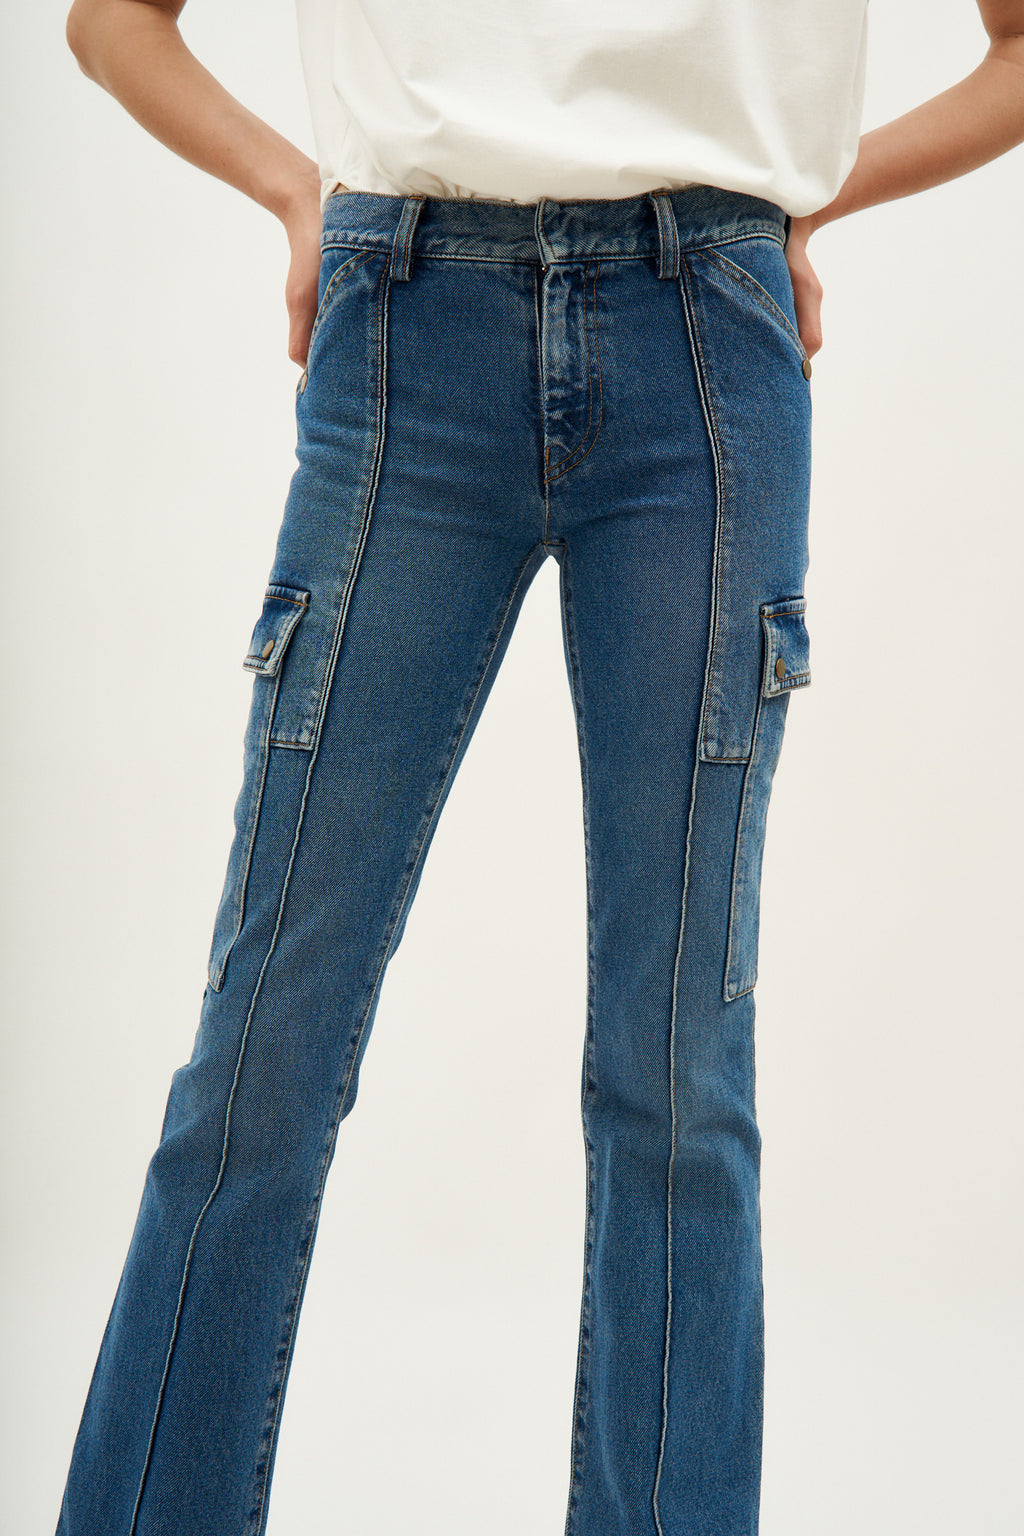 Genadio Ocean Jeans